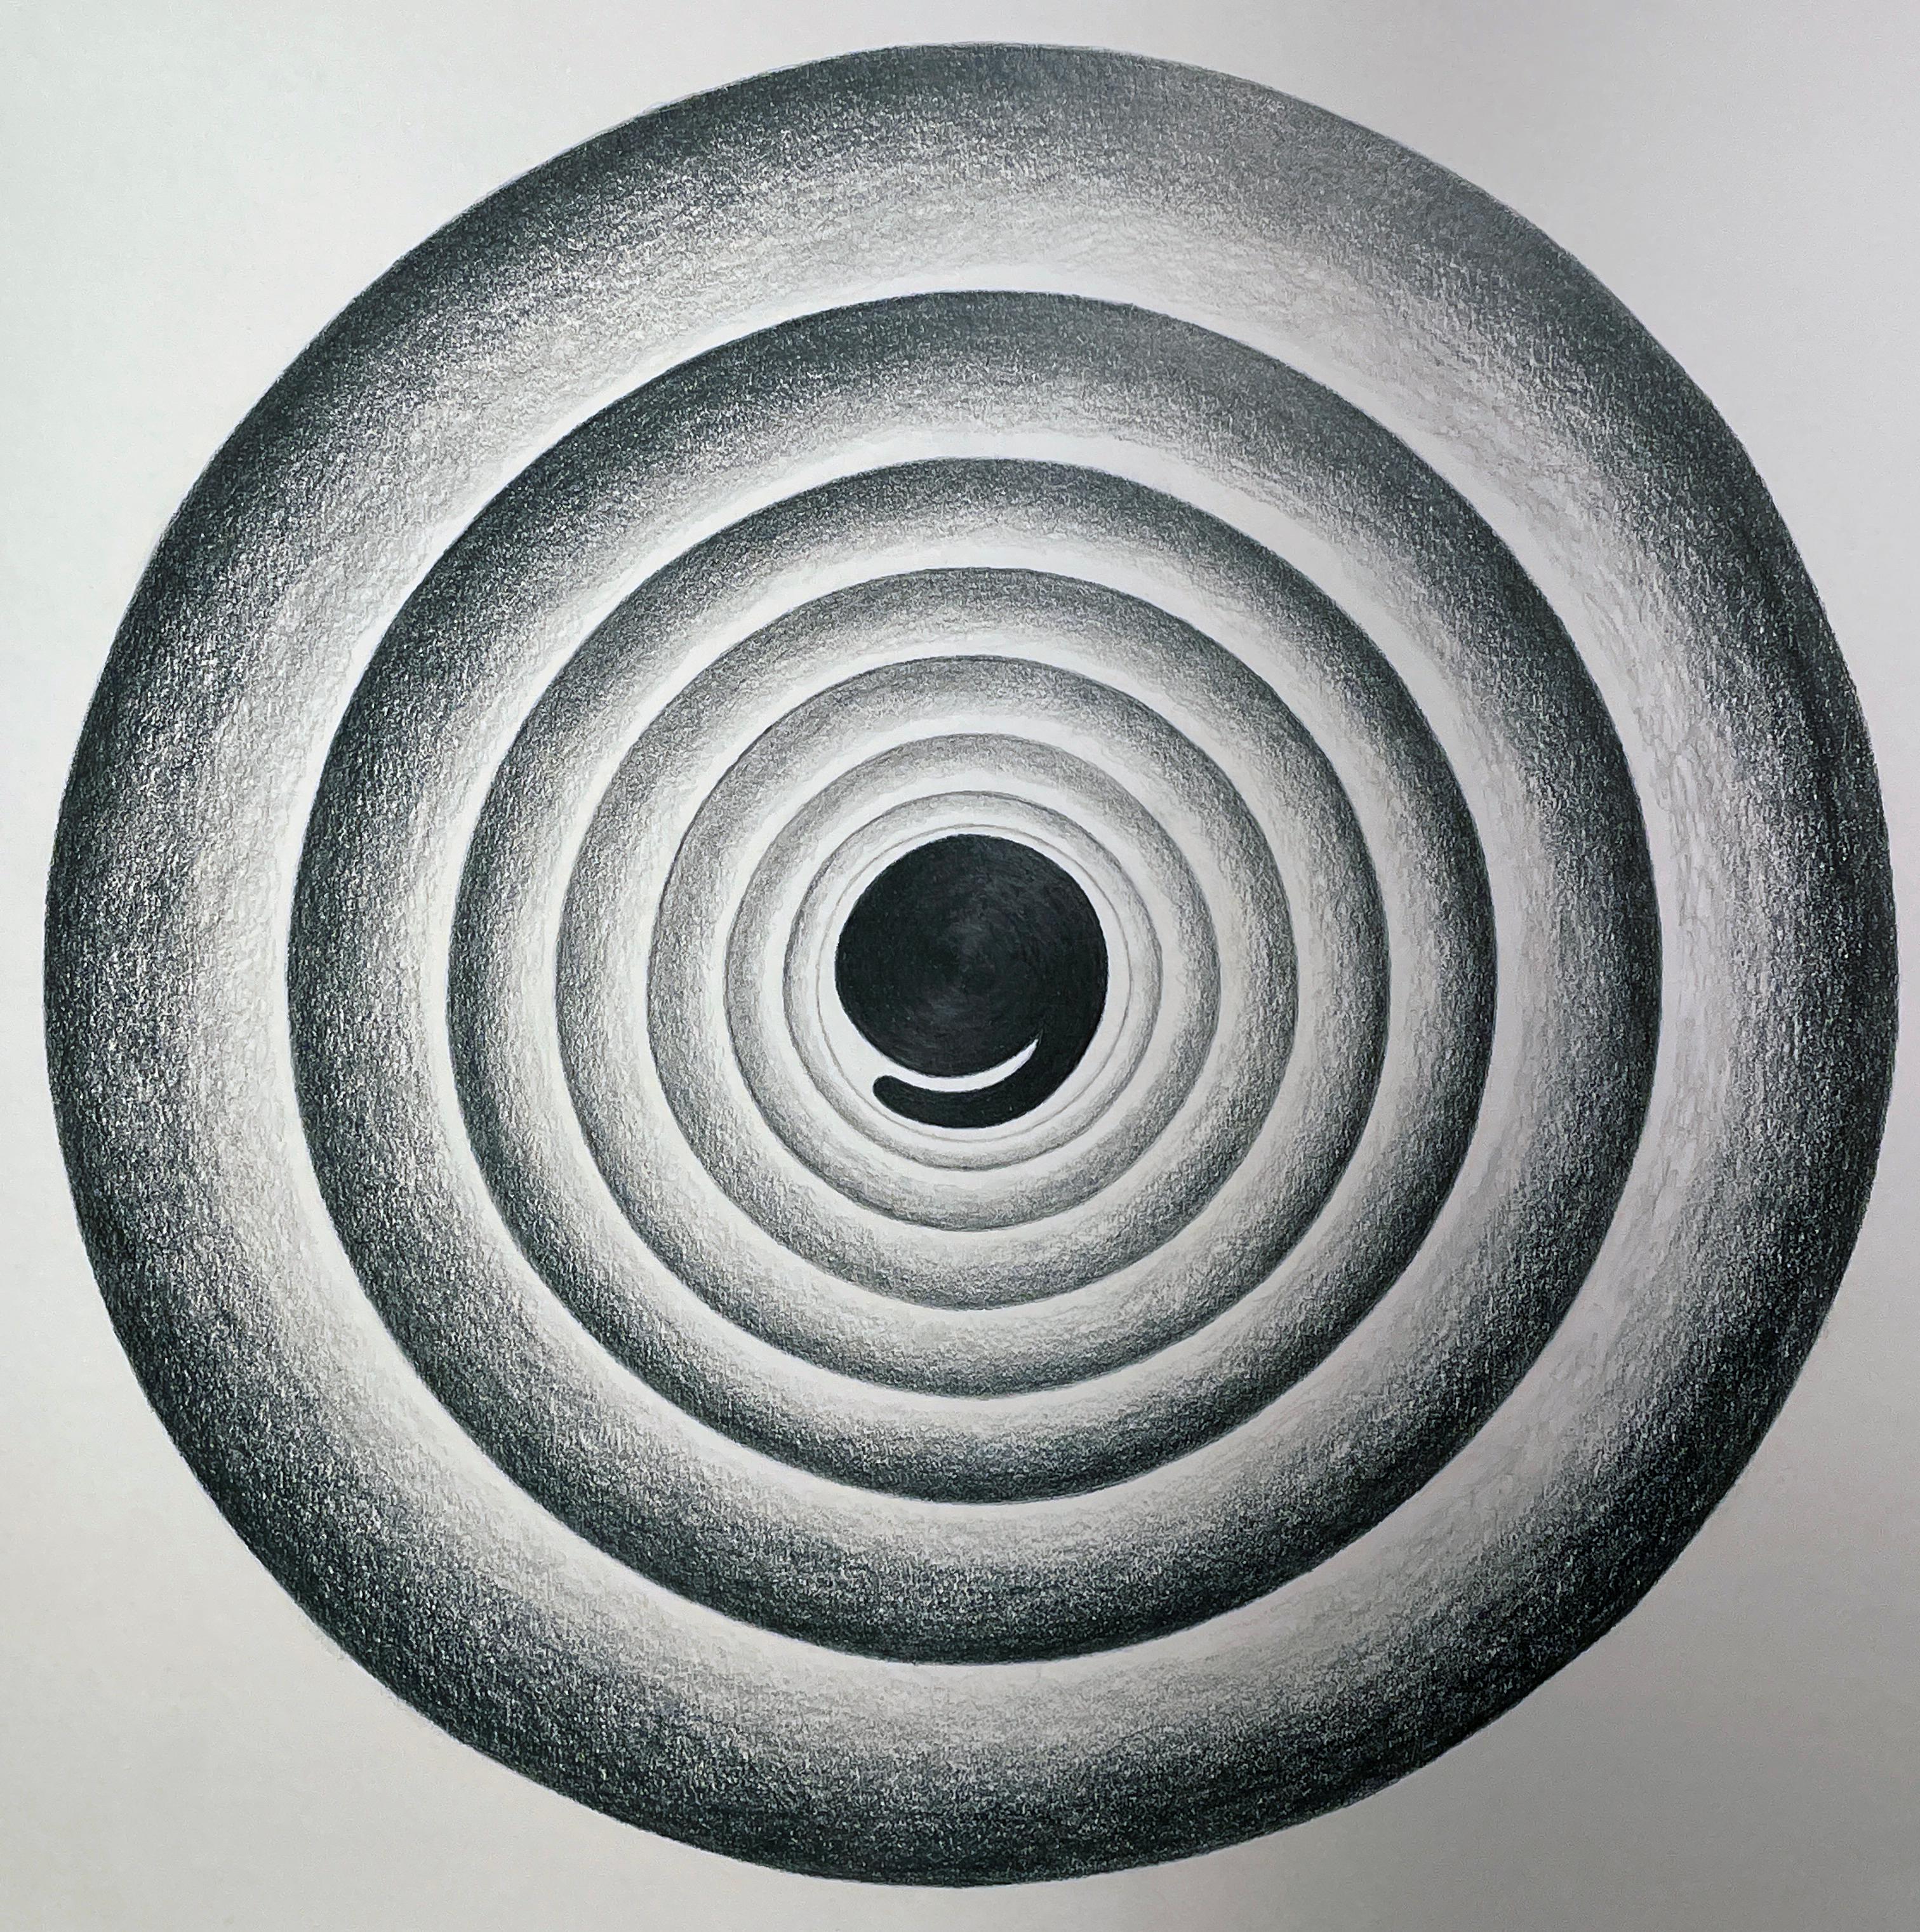 Ensemble de trois abstractions circulaires géométriques , graphite sur papier, encadré 6